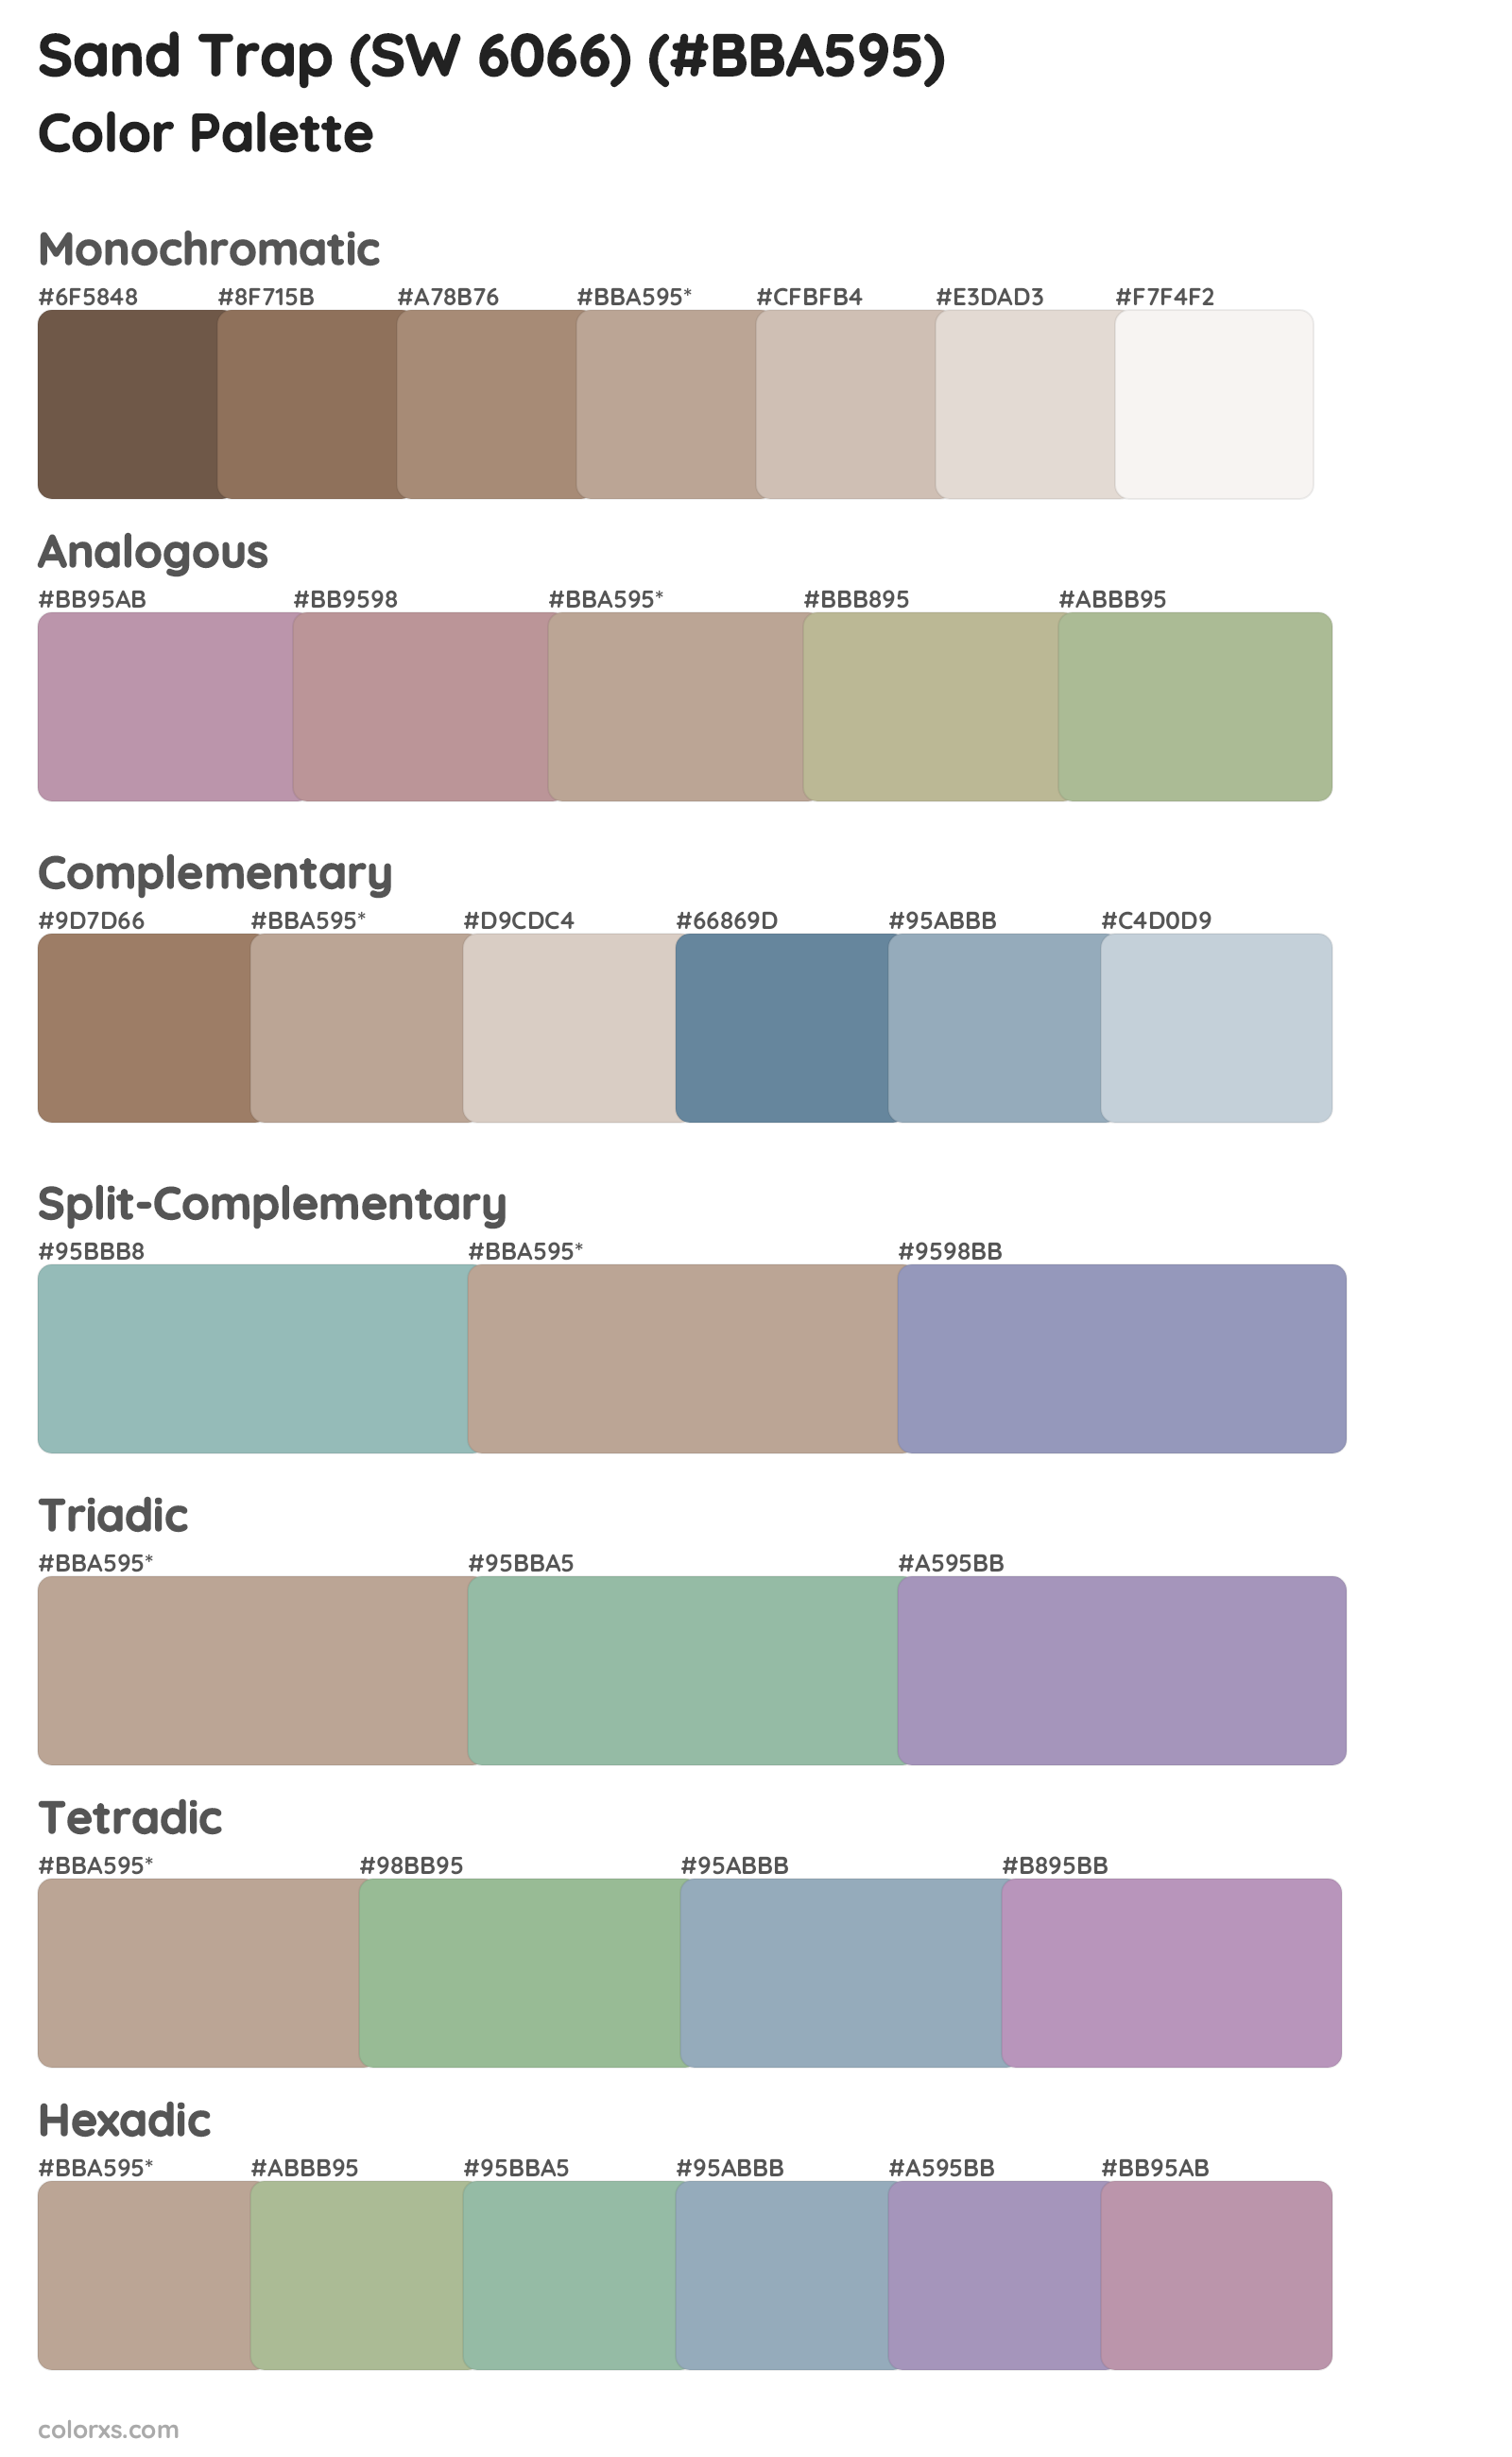 Sand Trap (SW 6066) Color Scheme Palettes